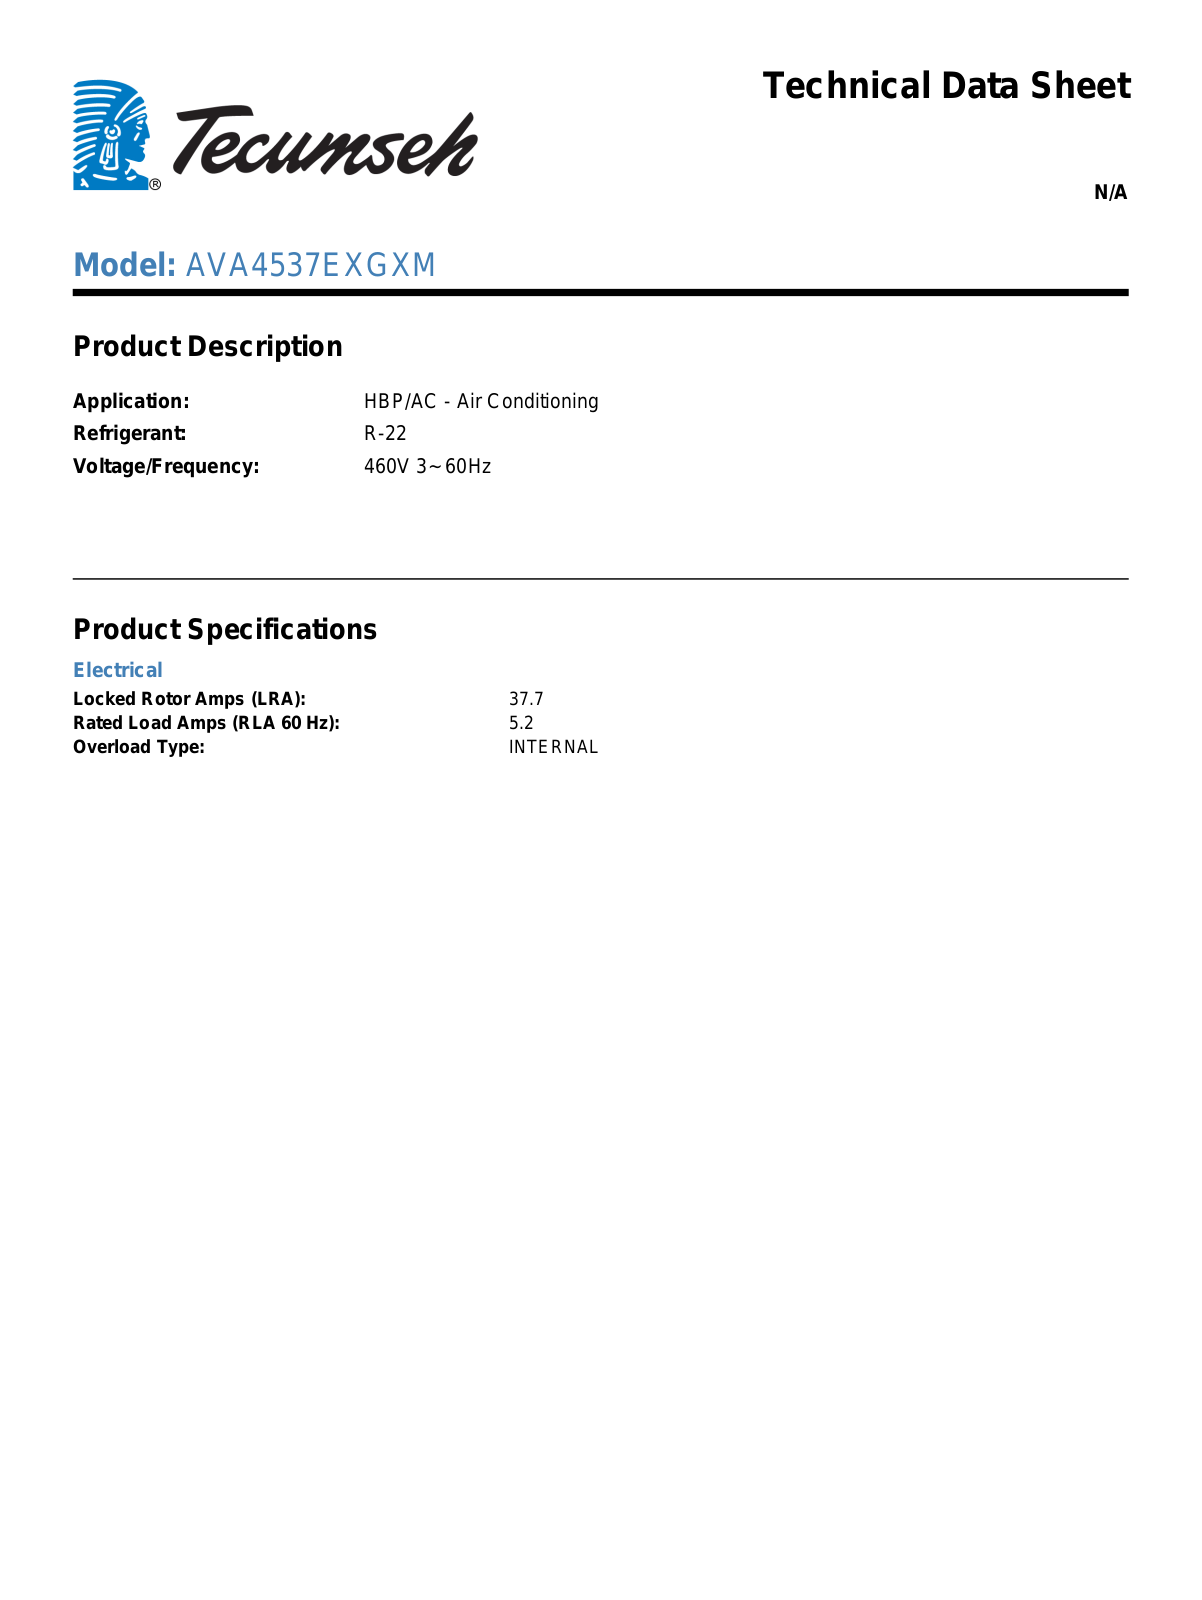 Tecumseh AVA4537EXGXM Technical Data Sheet